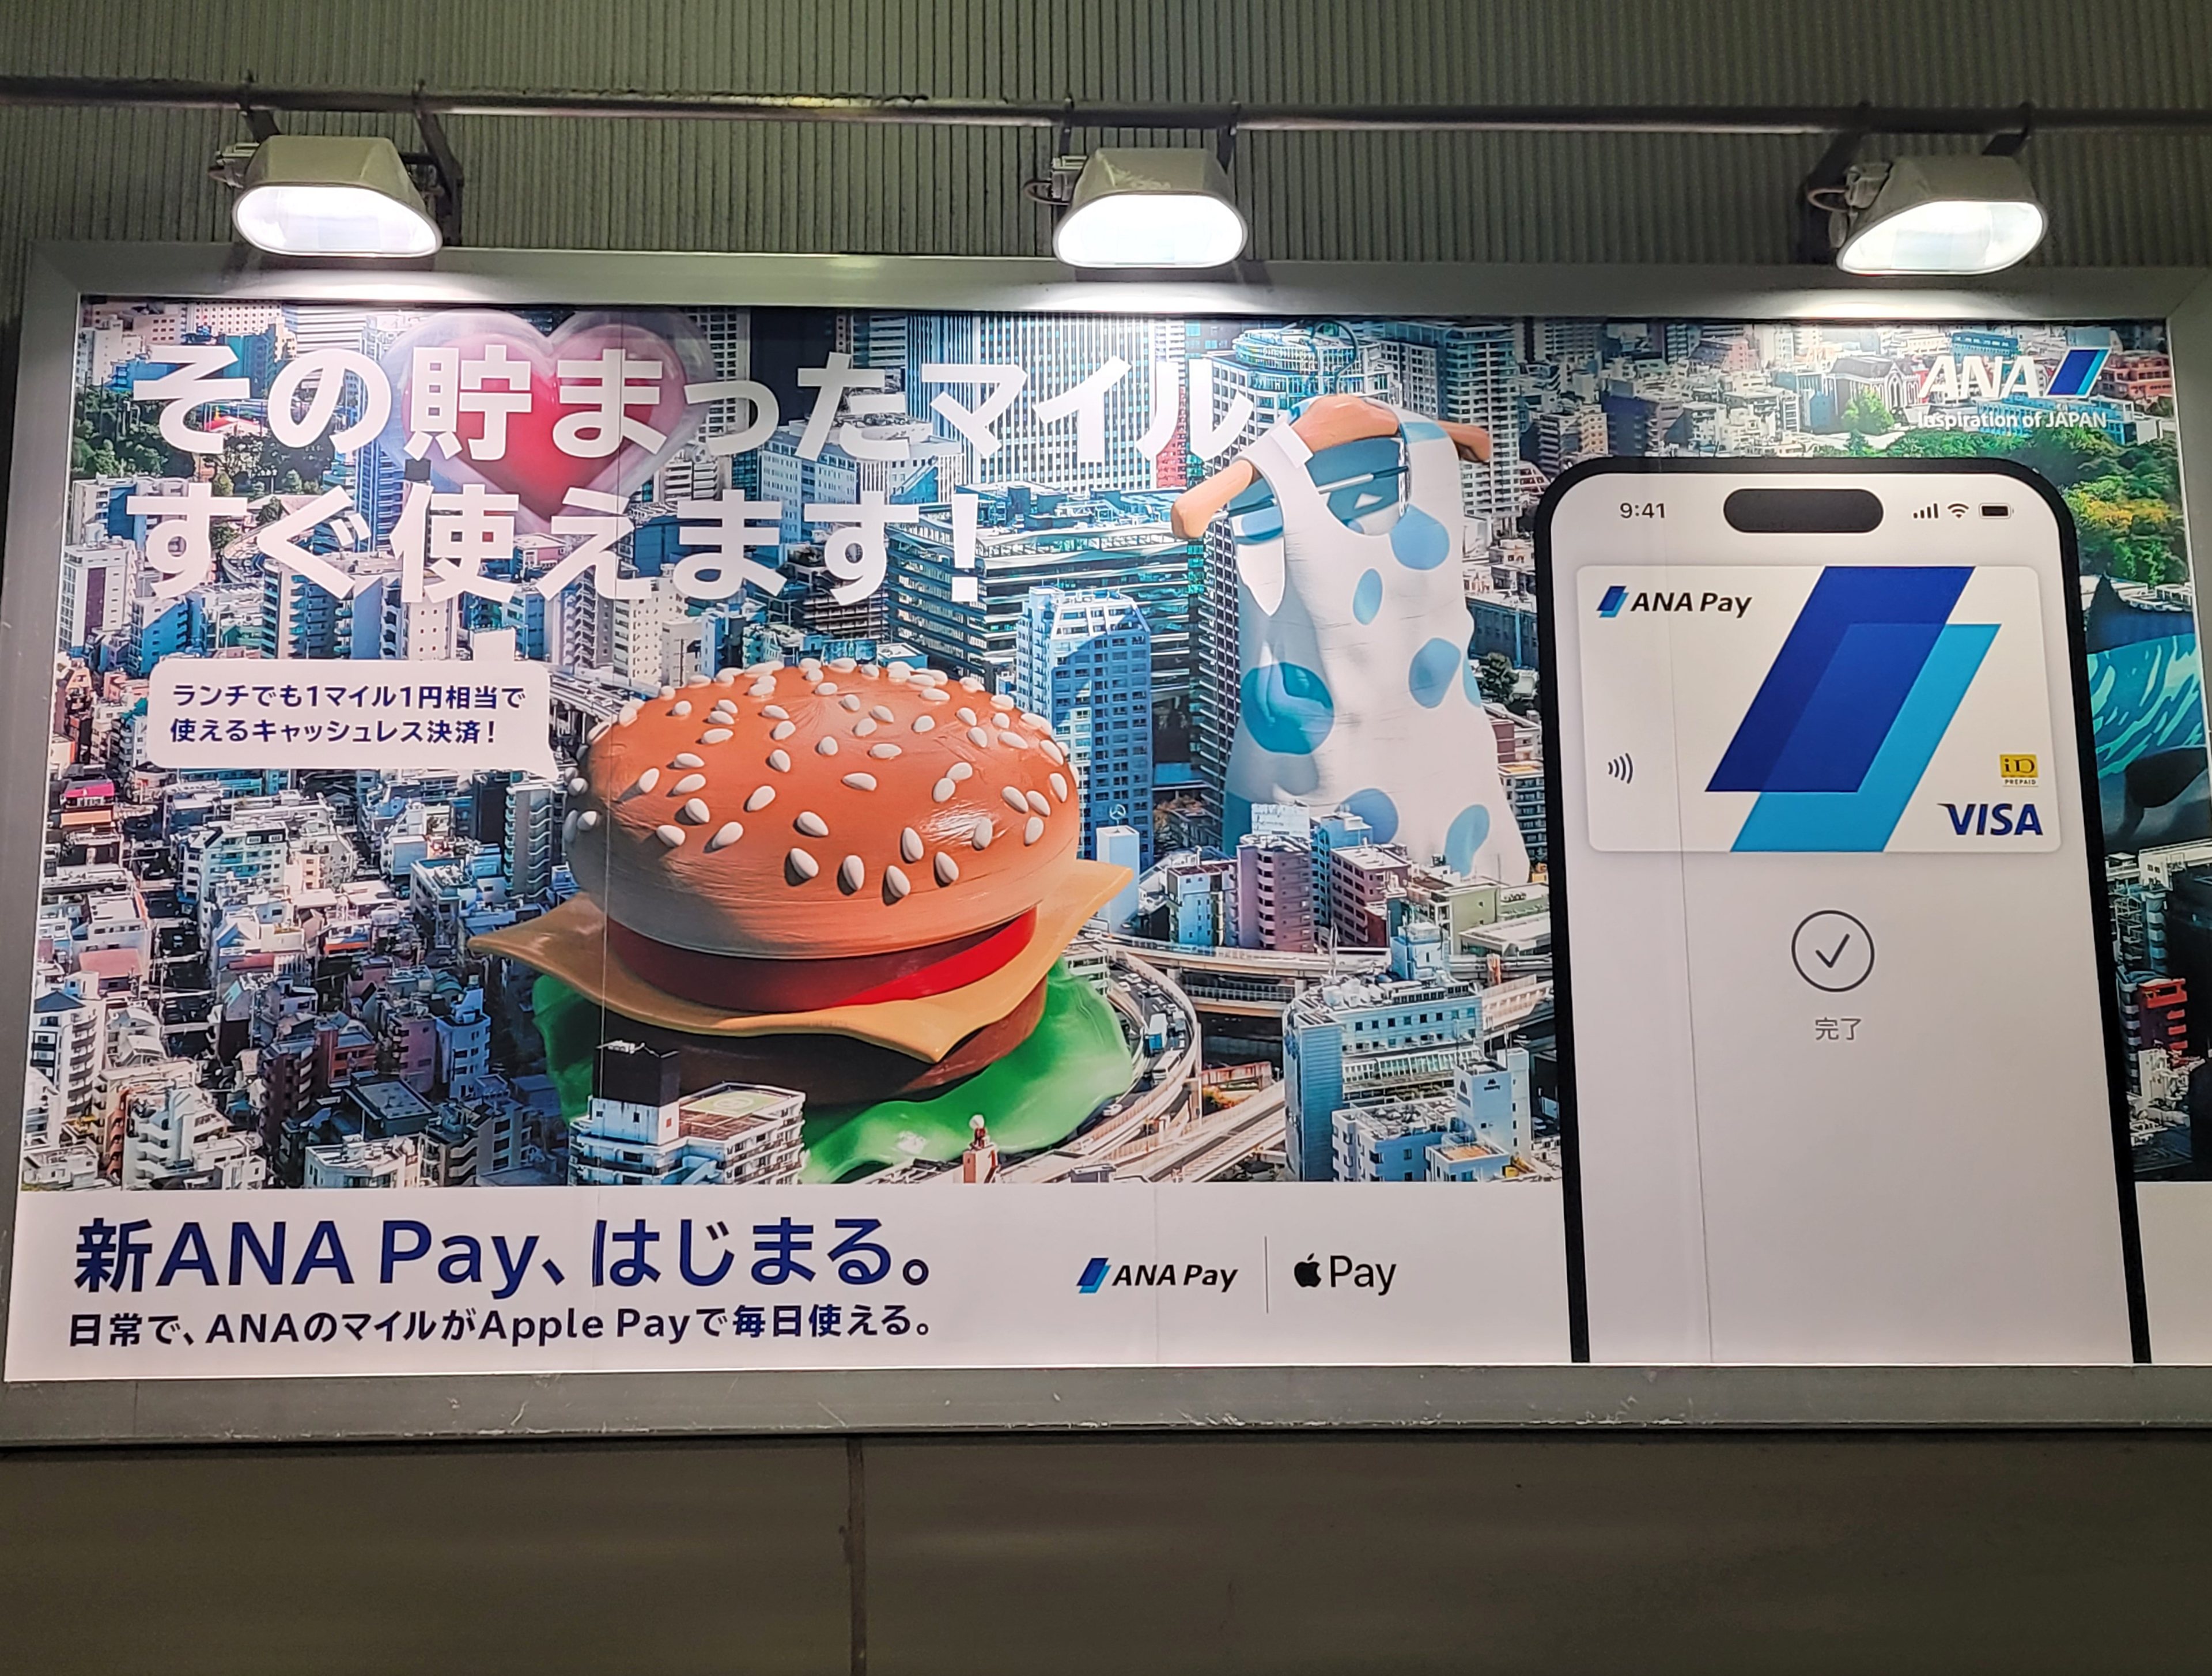 羽田空港に提示されていたANA Payのポスター。PRが盛んに行われている